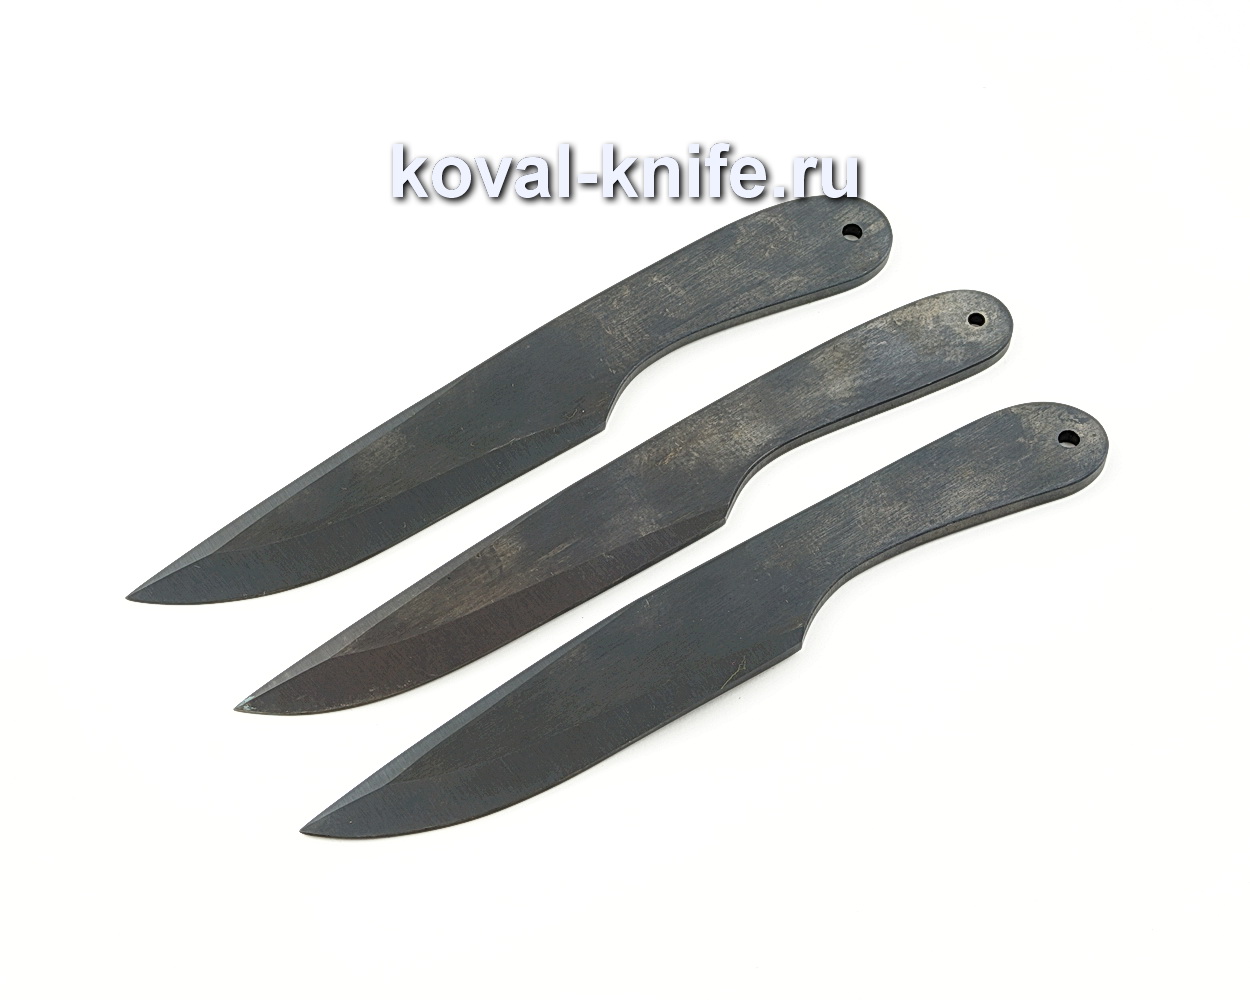 Набор метательных ножей Осетр из стали 65Г 3шт. A516